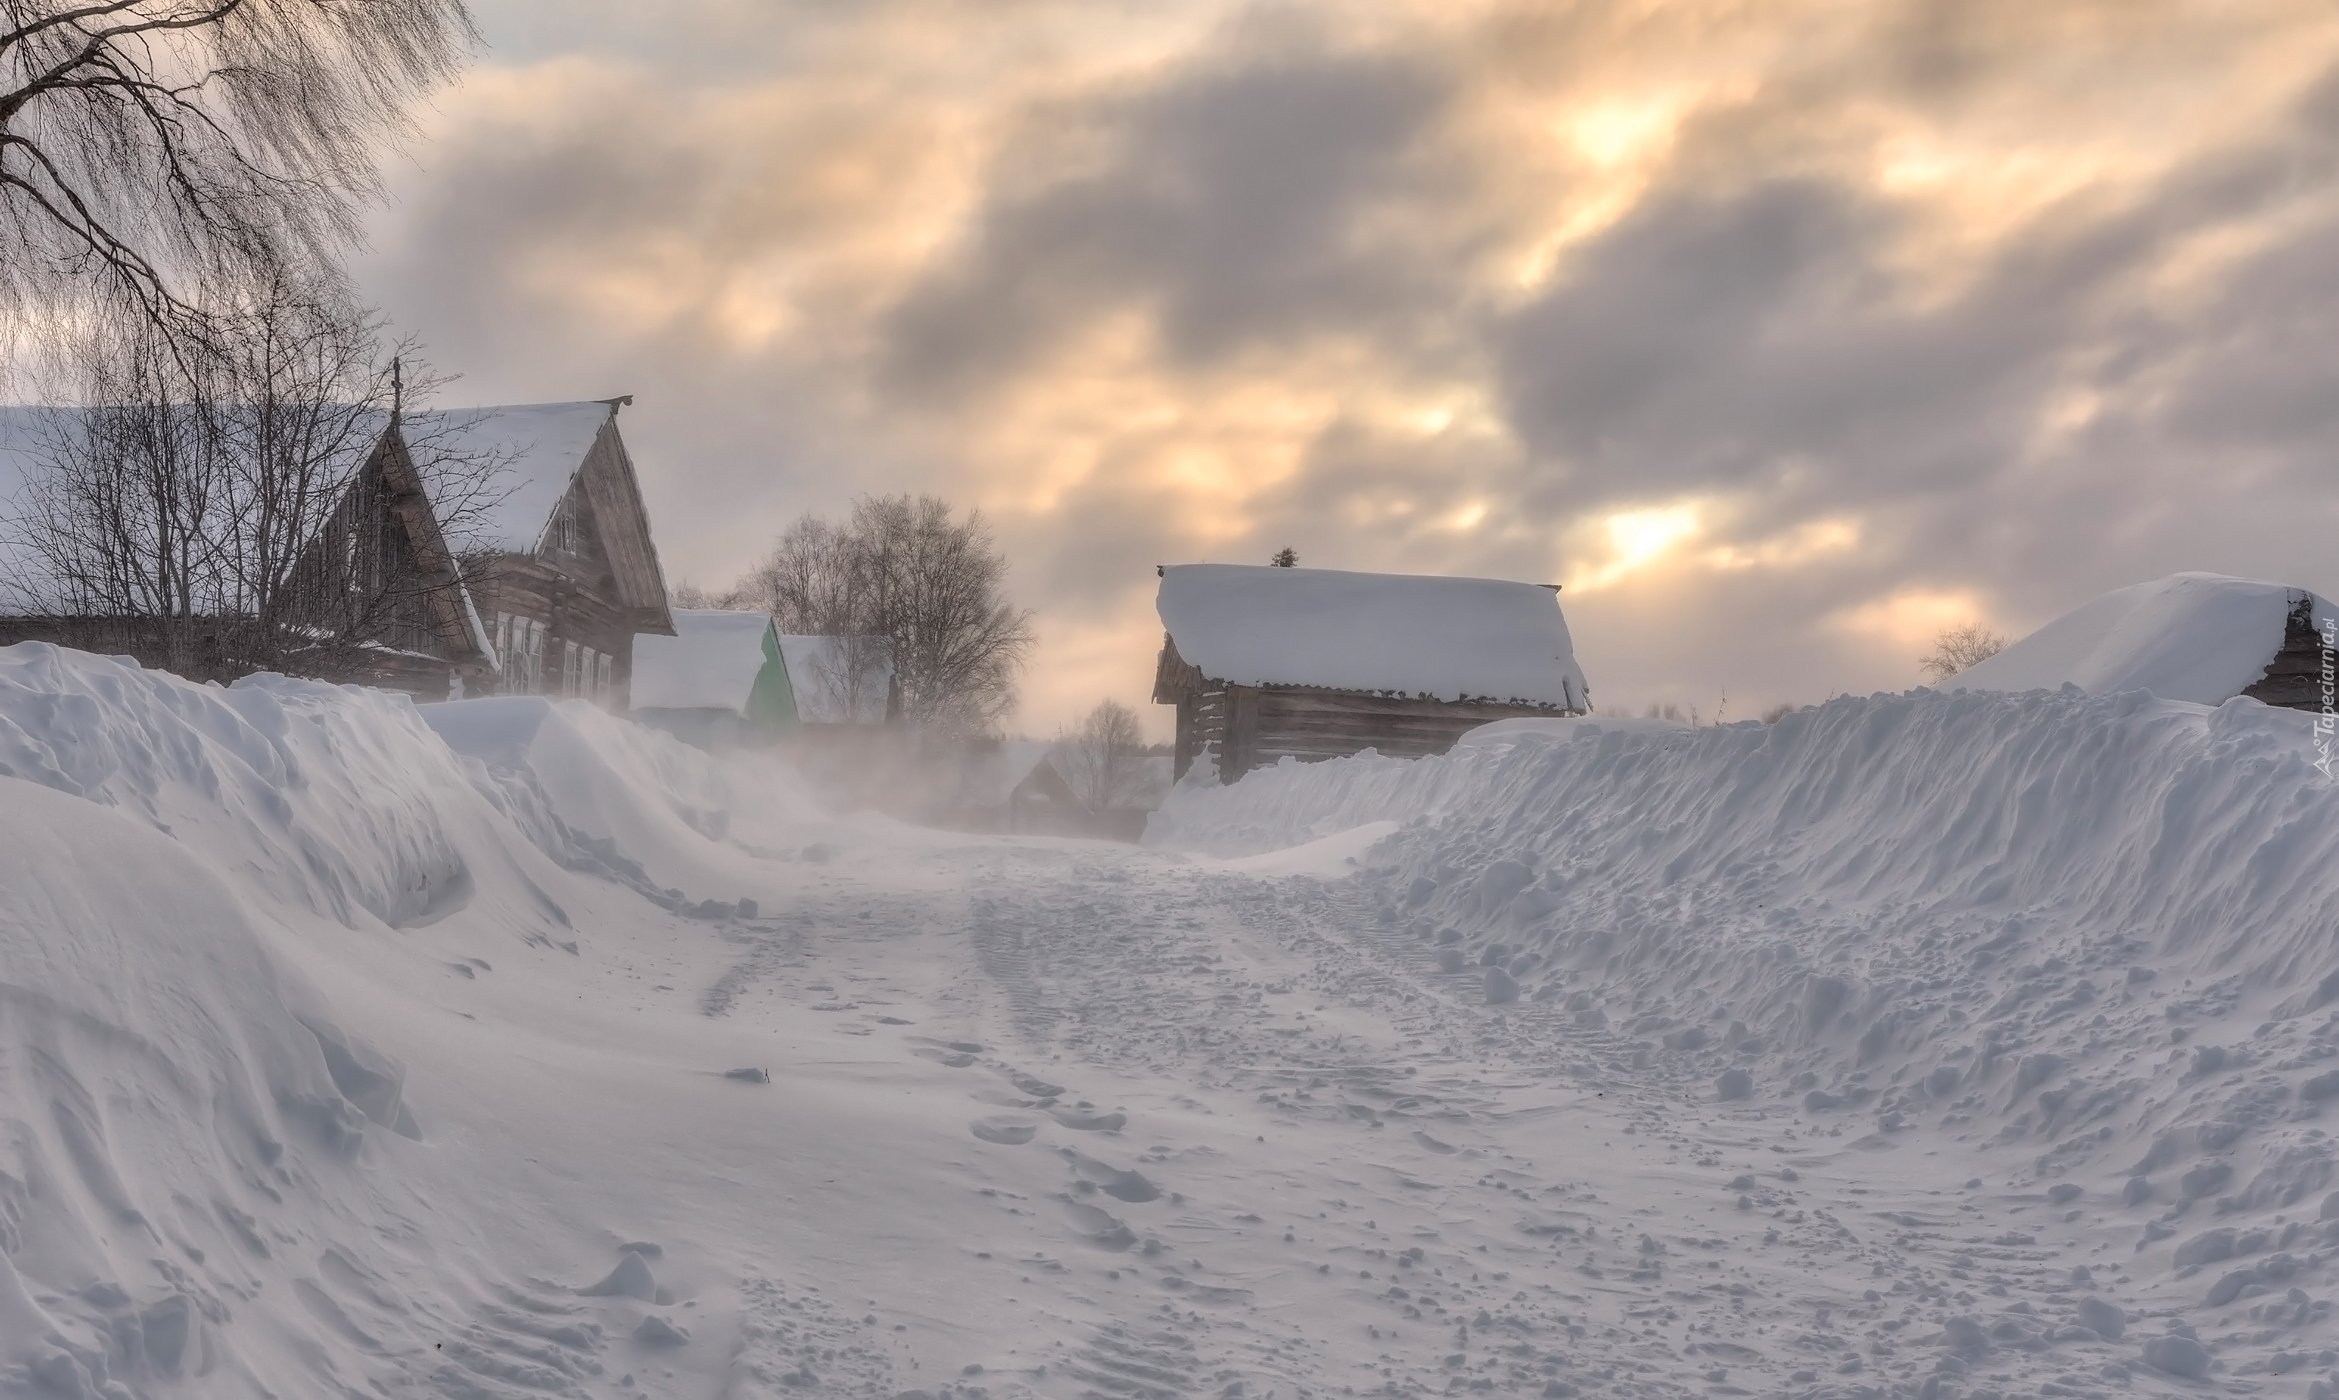 Село качки занесенное снегом оттаивает. Деревня в снегу. Сугробы в деревне. Зима в деревне. Снегопад в деревне.